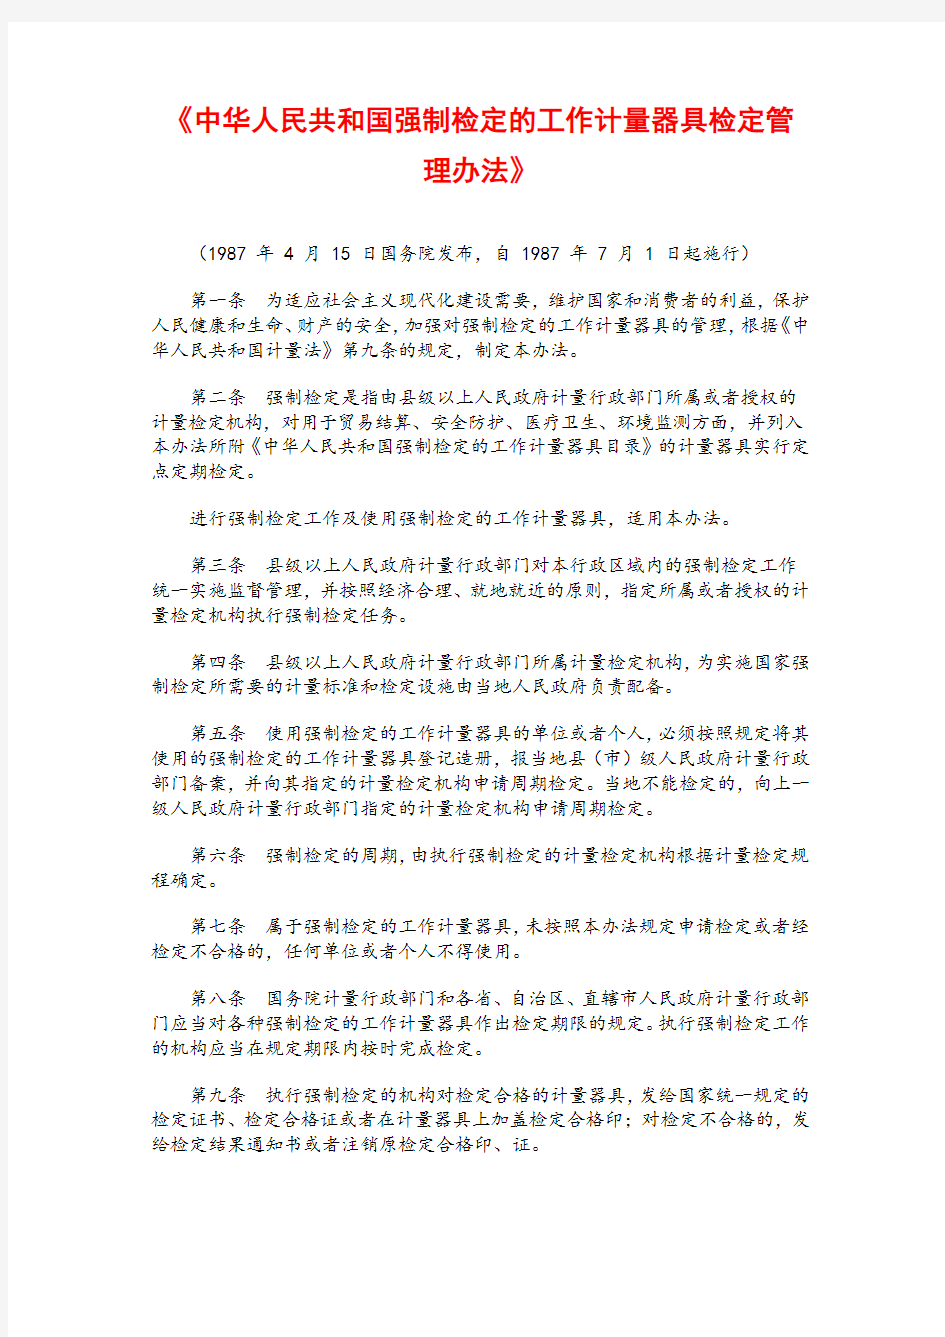 W041-中华人民共和国强制检定的工作计量器具检定管理办法-国发[1987]31号